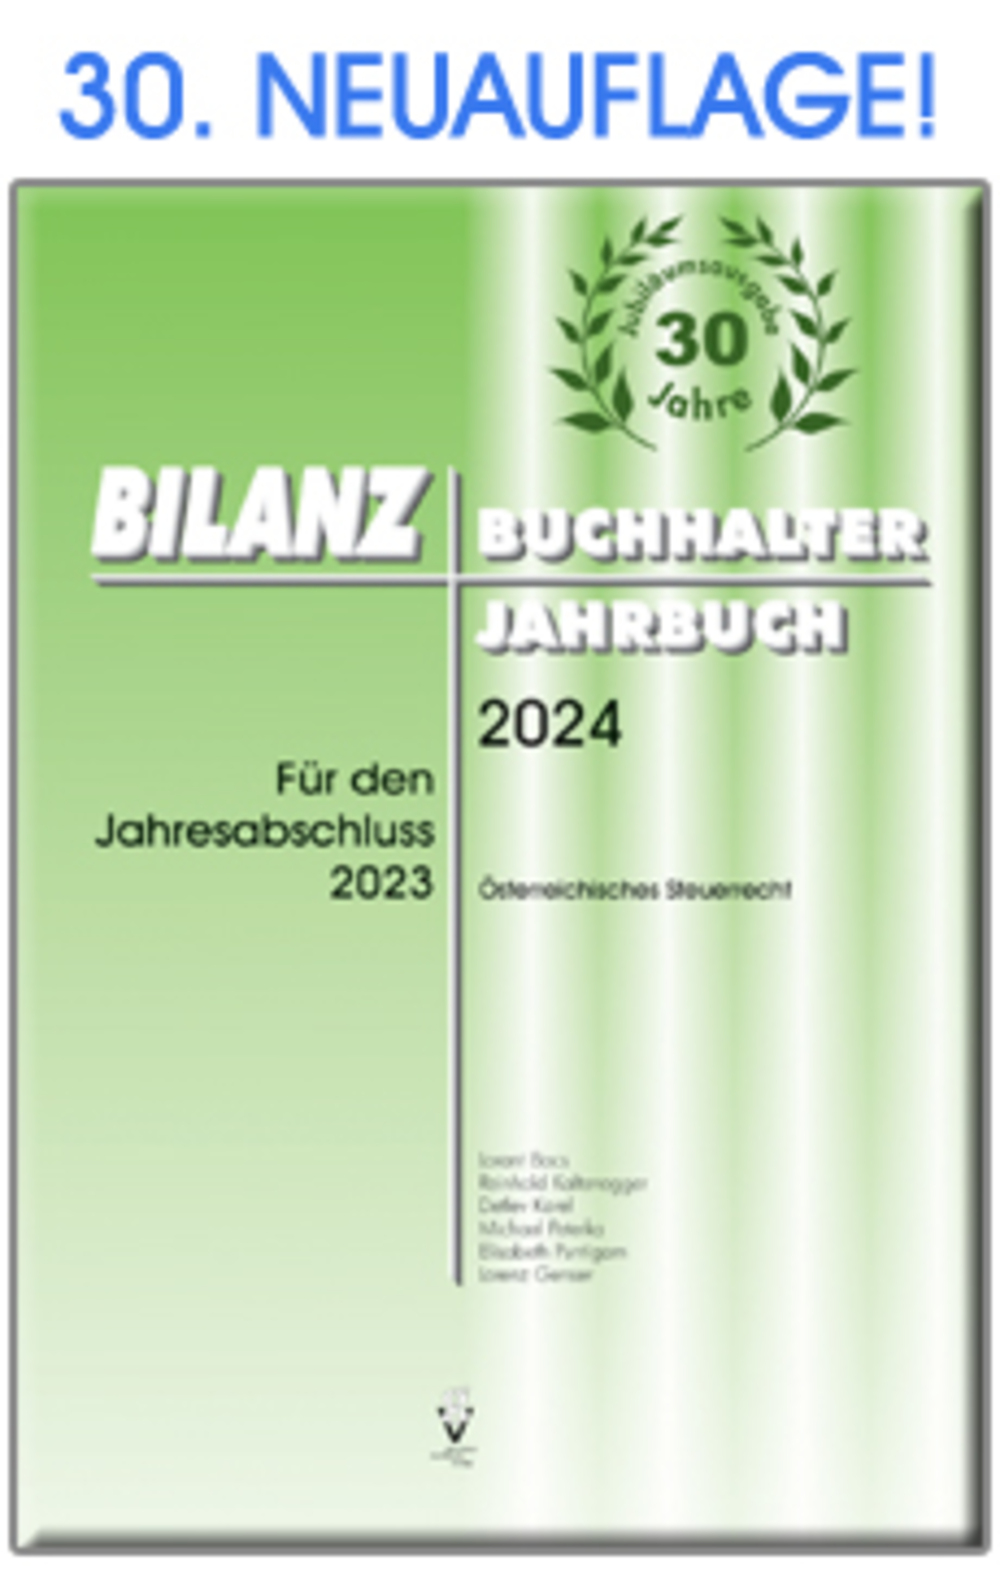 BILANZBUCHHALTER JAHRBUCH 2024 Für den Jahresabschluss 2023 & JUBILÄUMSBONUS-E-BOOK